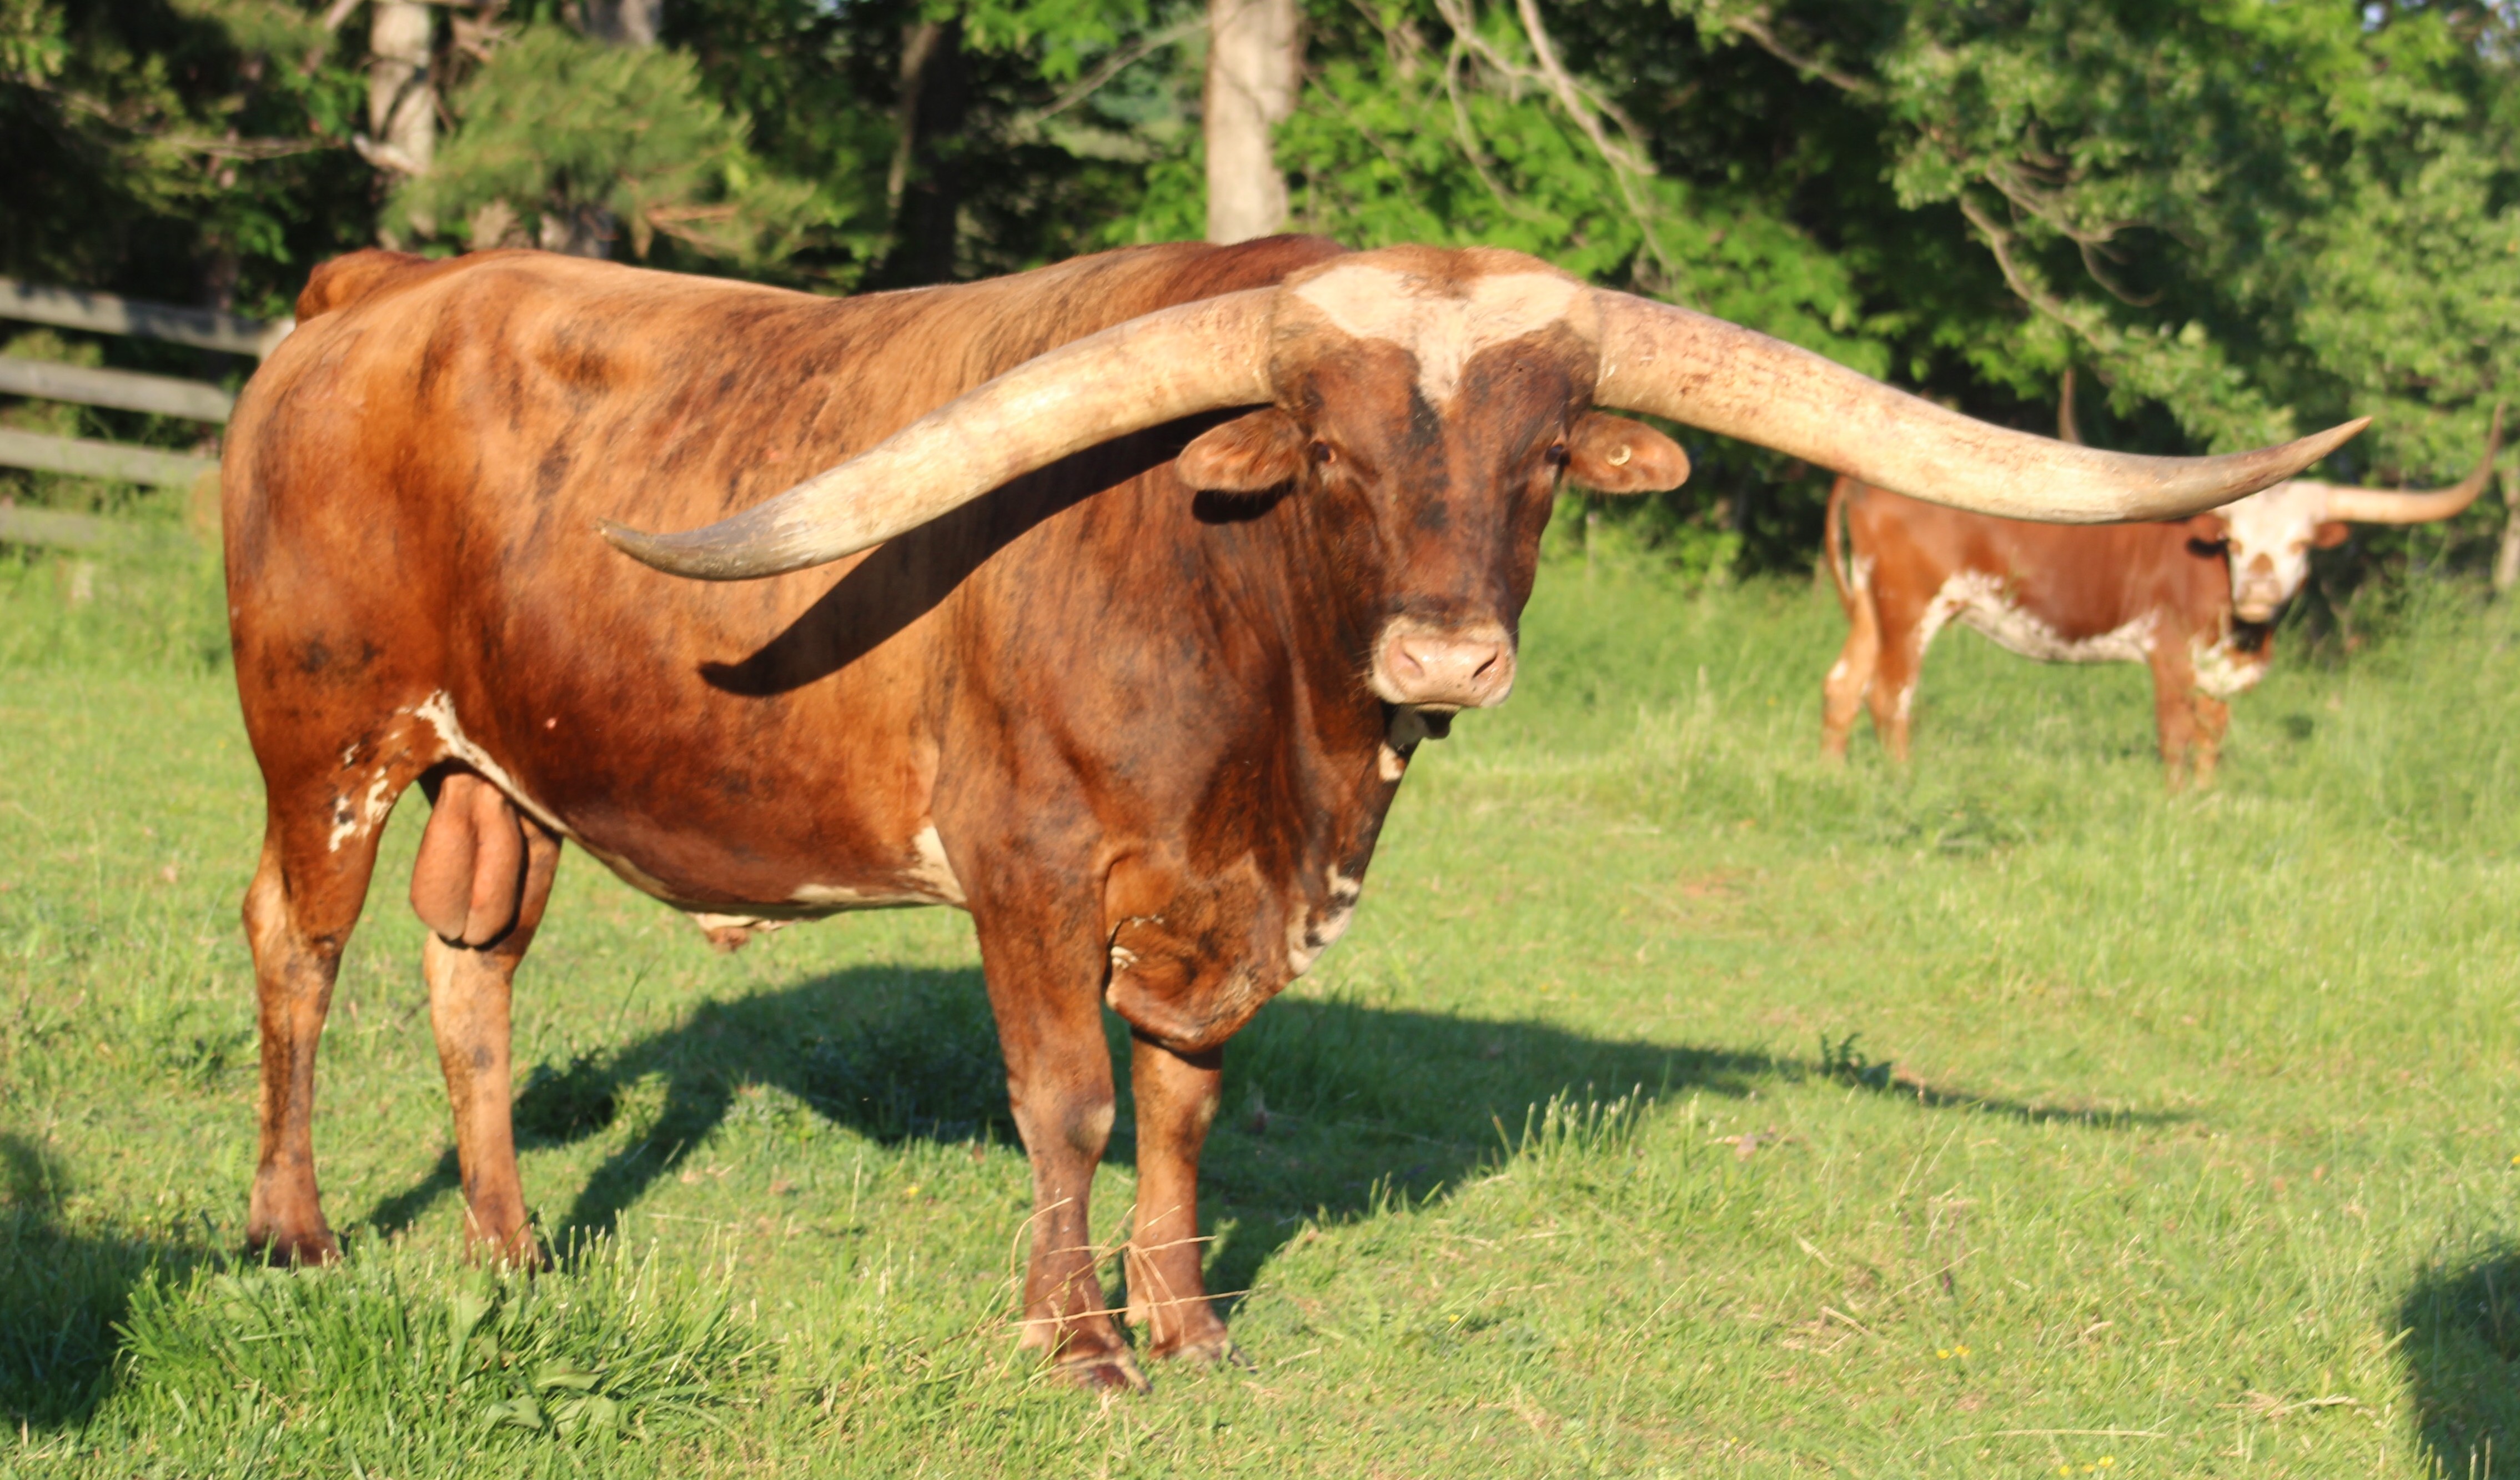 Hubbell Longhorns raises Registered Texas Longhorns in Hastings, MI.